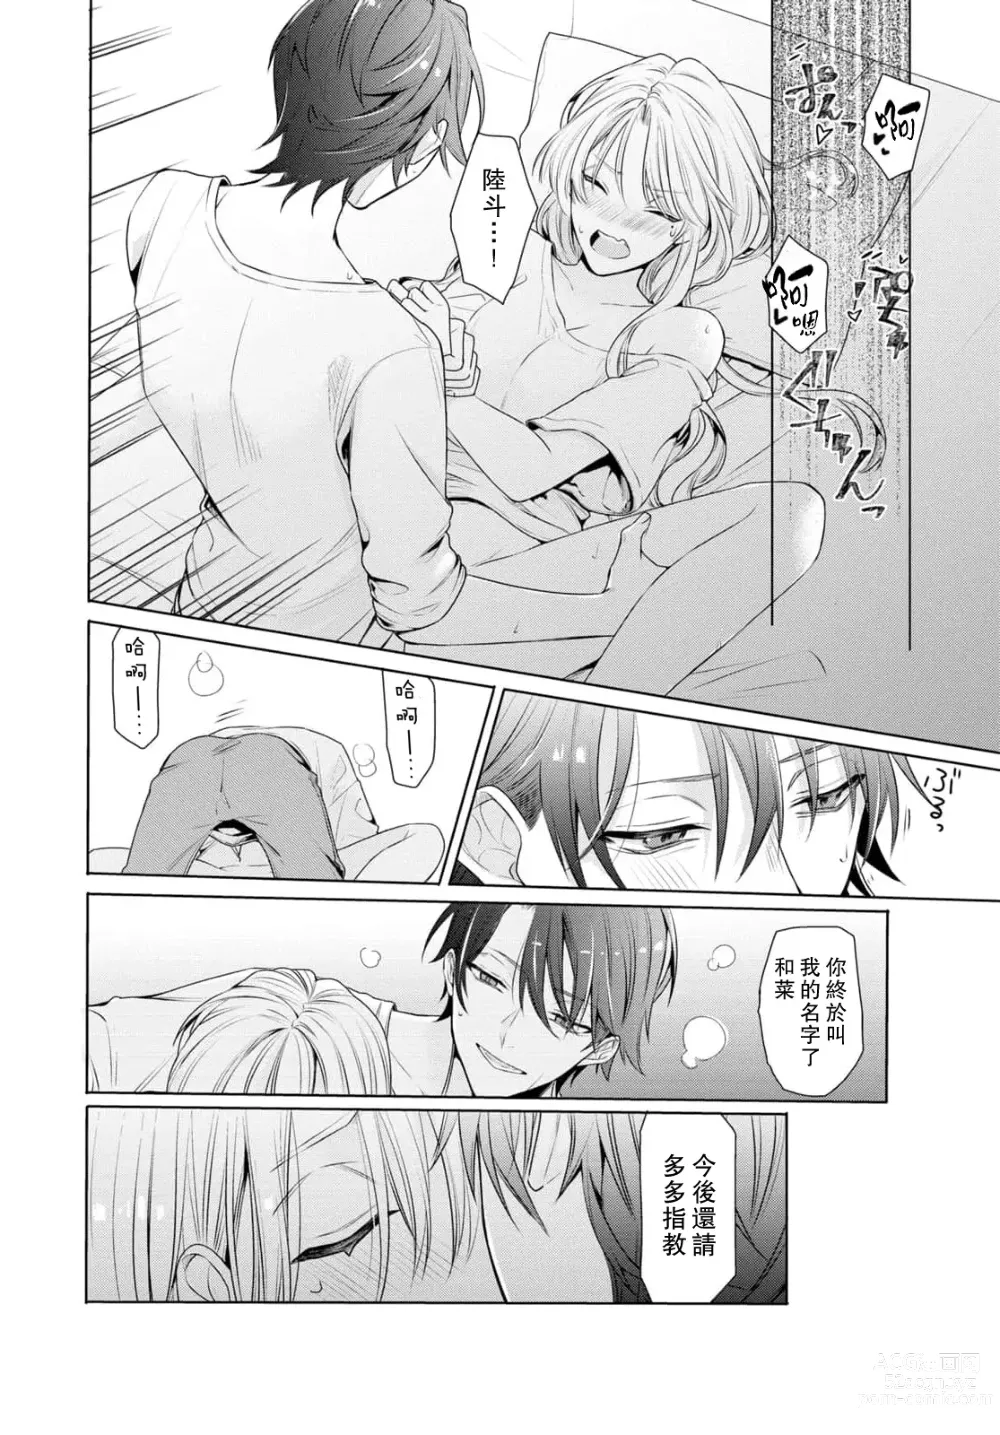 Page 18 of manga 过剩爱情让我今晚也体内高潮！？试婚夫妻的甜蜜情事 1-3